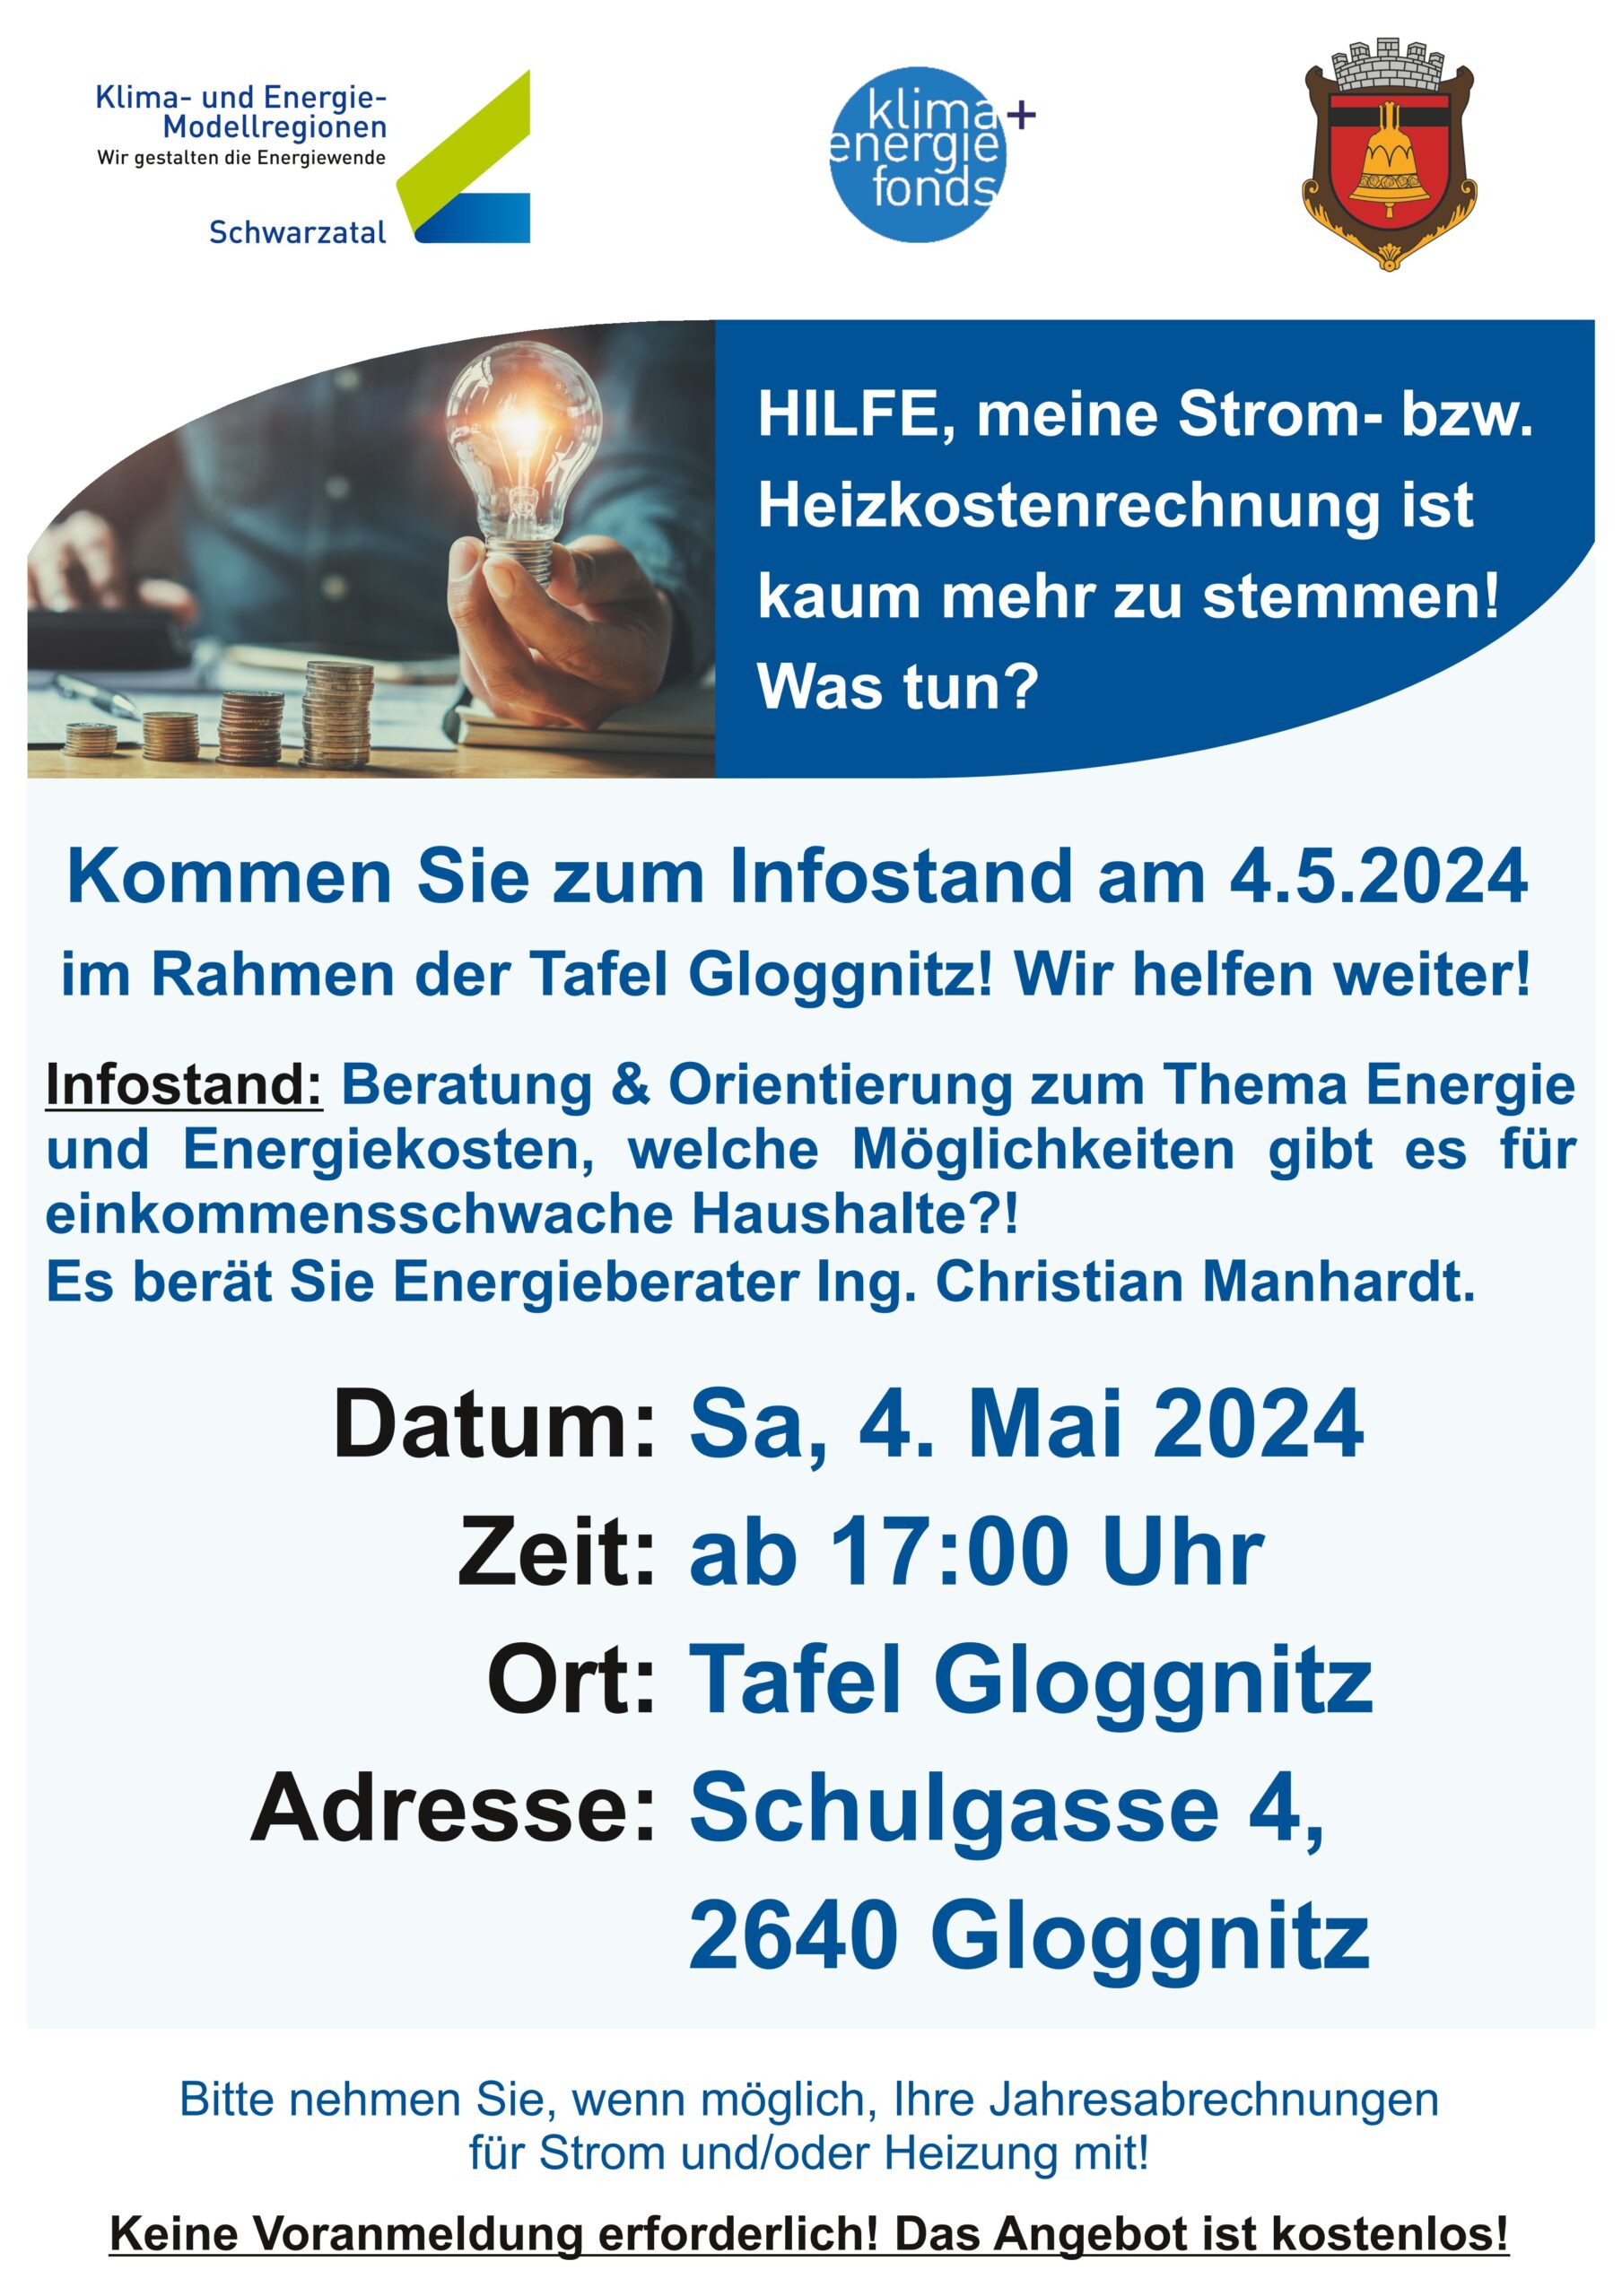 Beratungstermin "Bekämpfung Energiearmut" im Rahmen der Tafel Gloggnitz am 4. Mai 2024 ab 17 Uhr (Schulgasse 4, Gloggnitz)